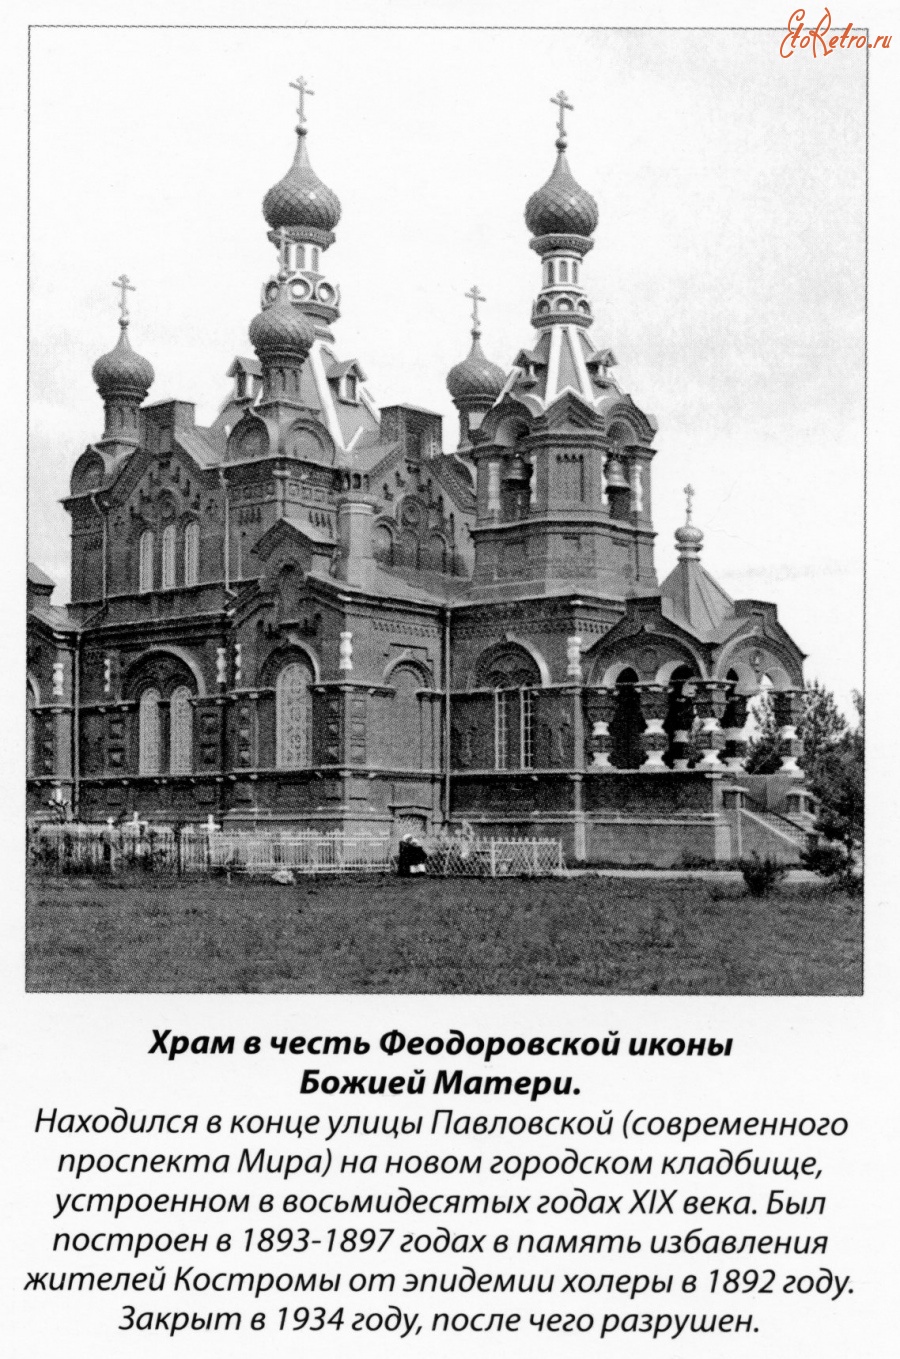 Кострома - Храм в честь Федоровской иконы Божией Матери (новокладбищенский)